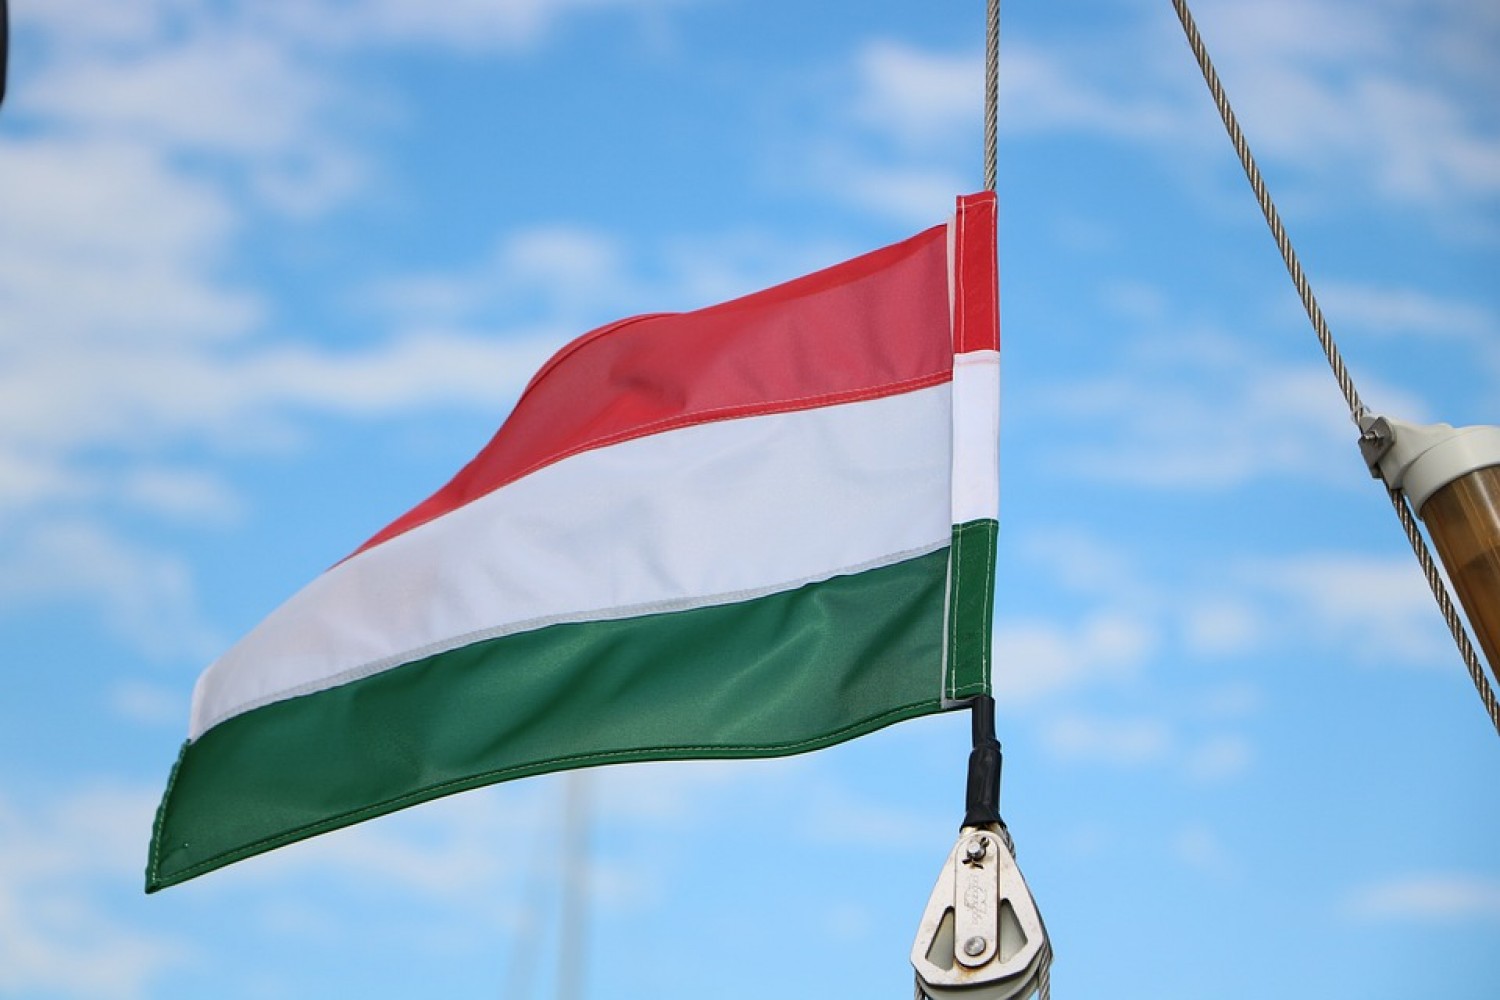 Légy büszke arra, hogy magyar vagy!